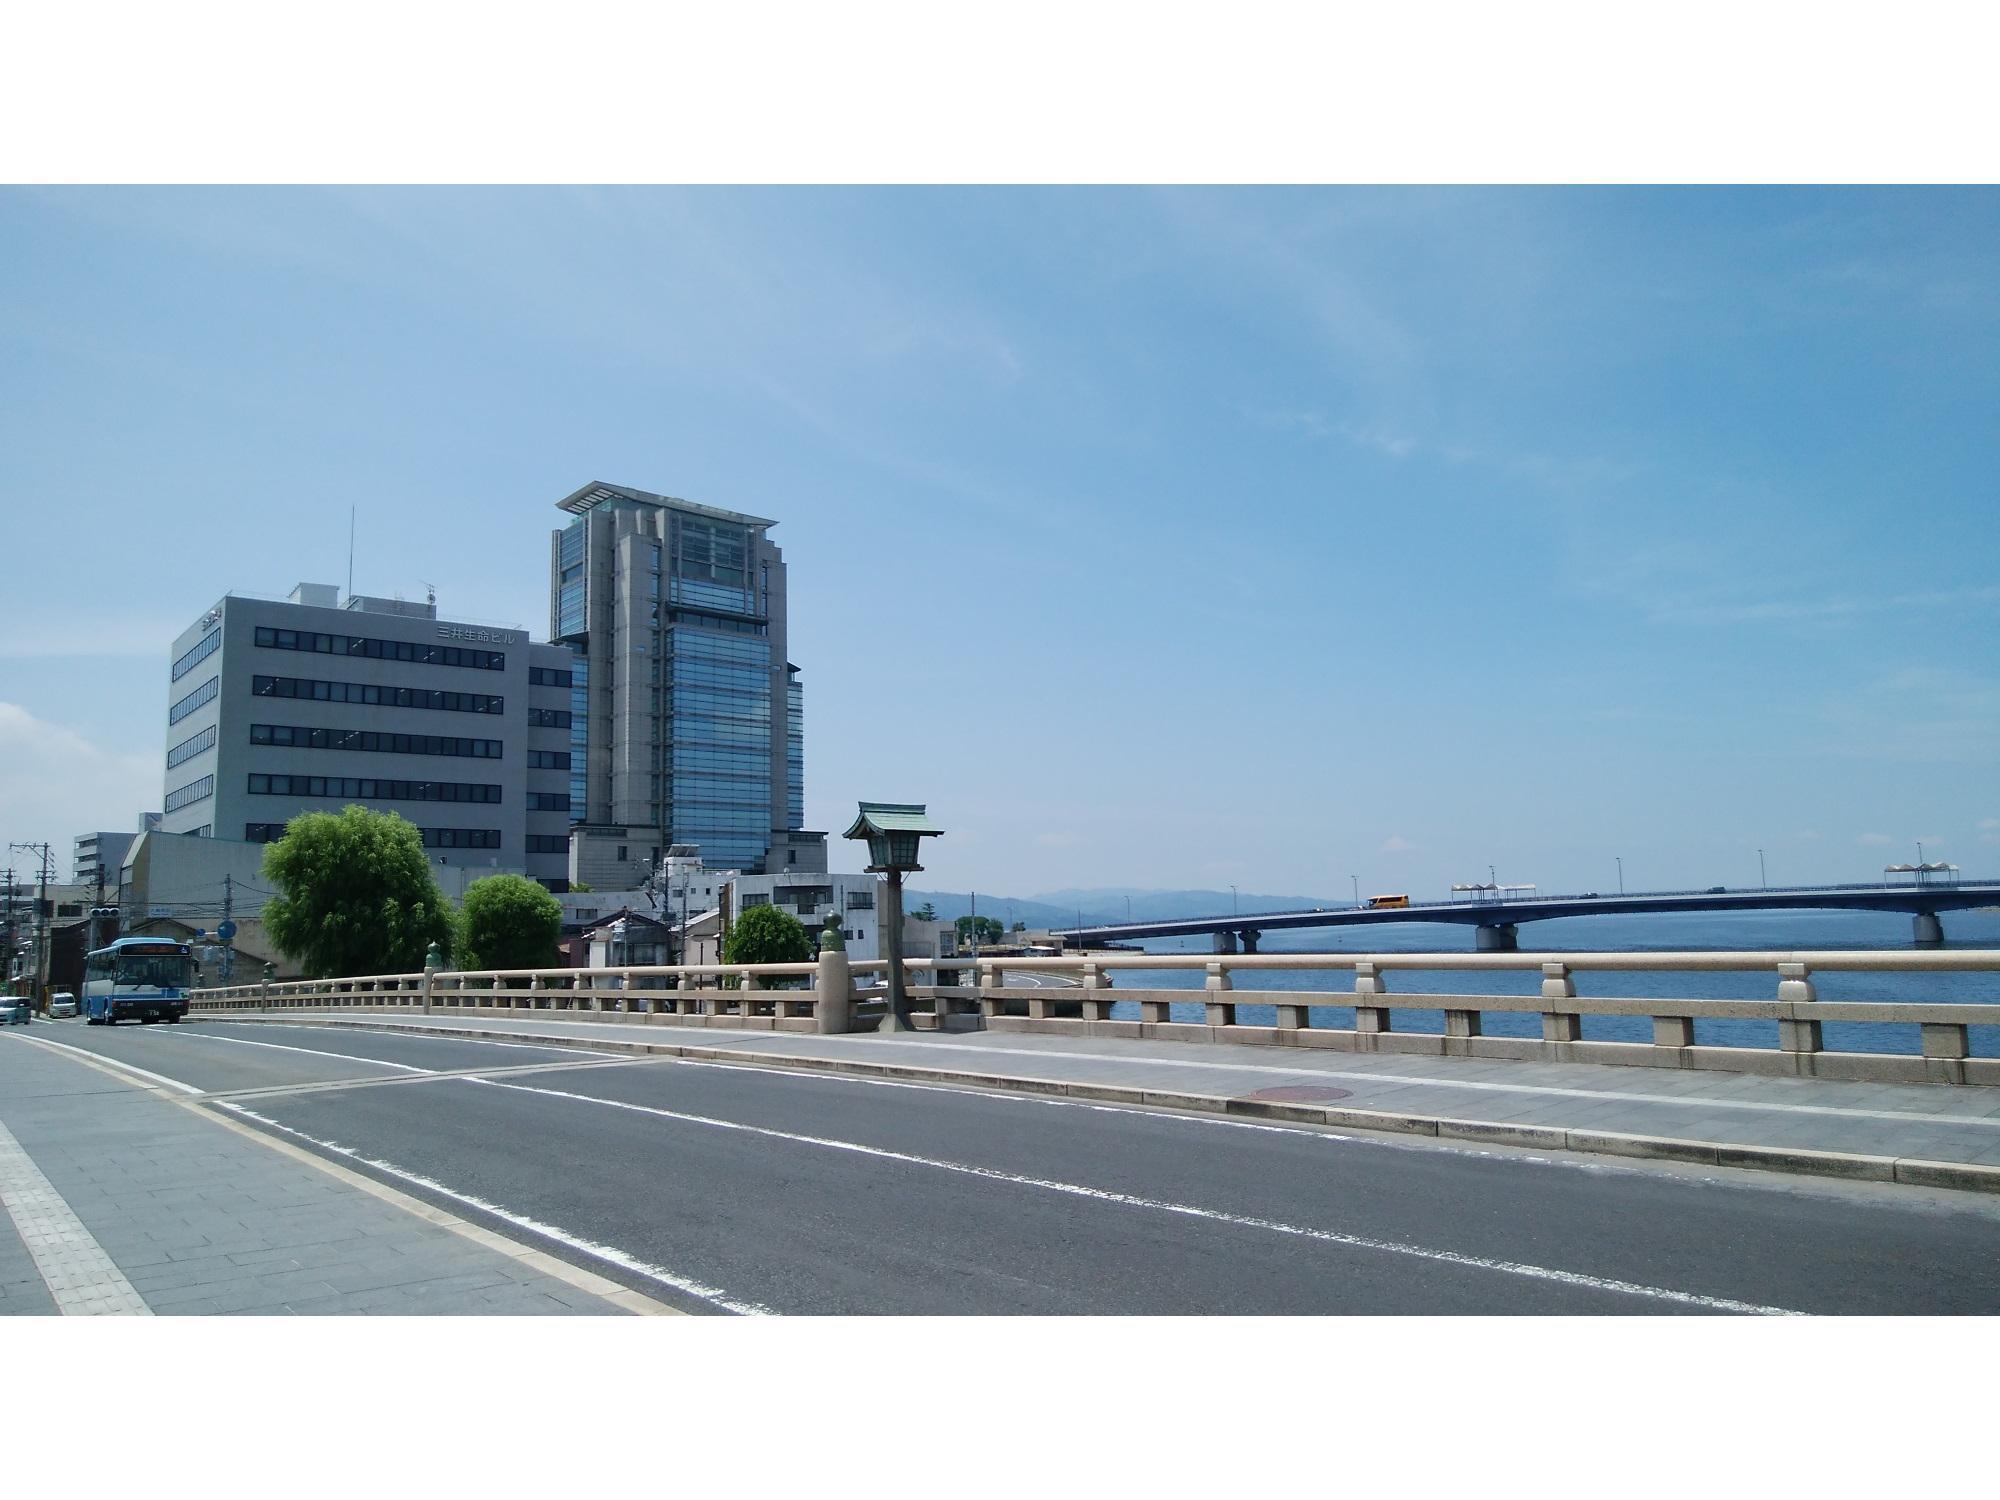 松江大橋南詰め、宍道湖岸のビル(左側)内